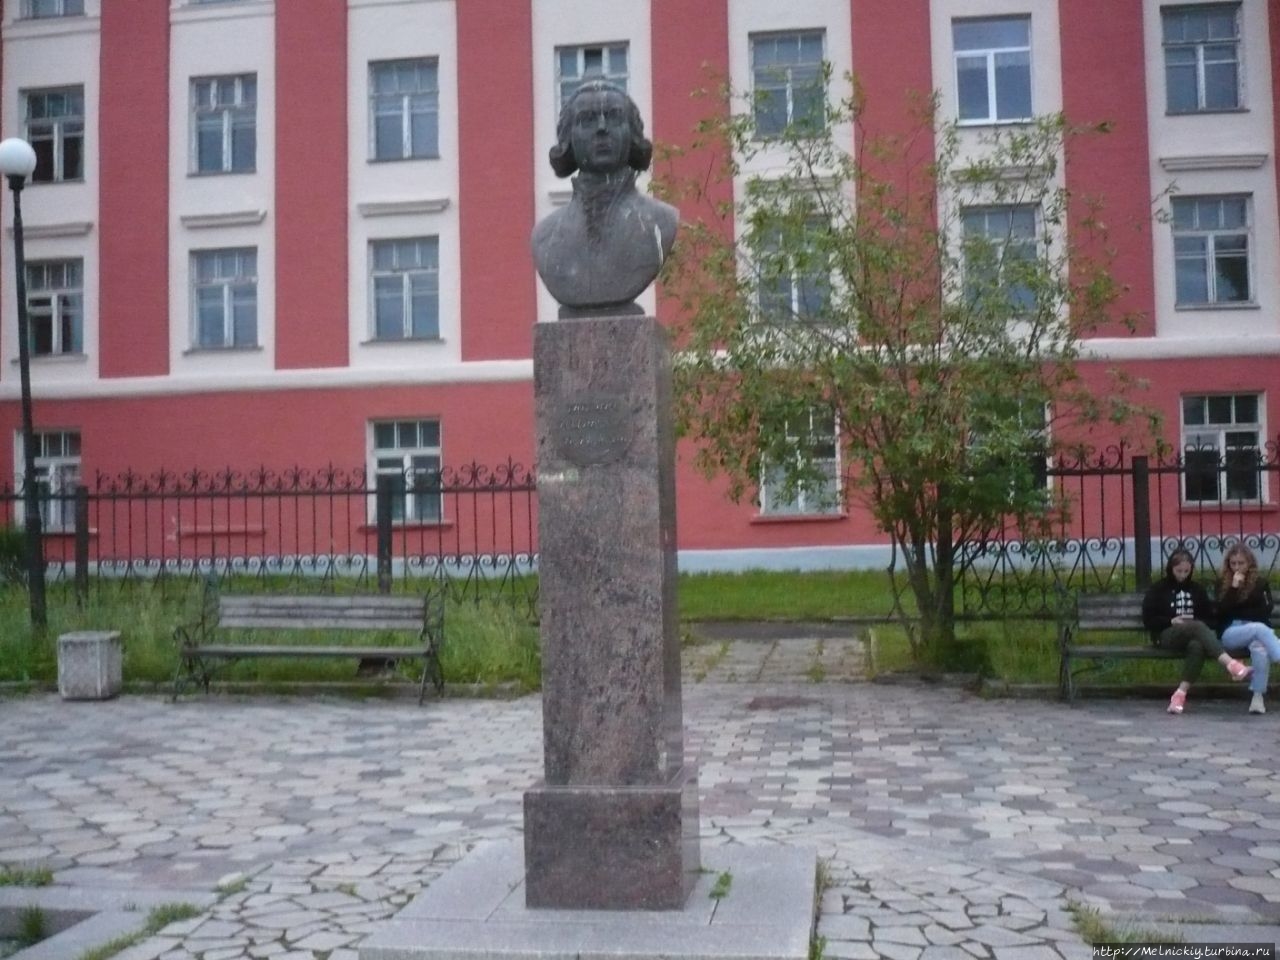 Бюст Державина / Bust of Derzhavin